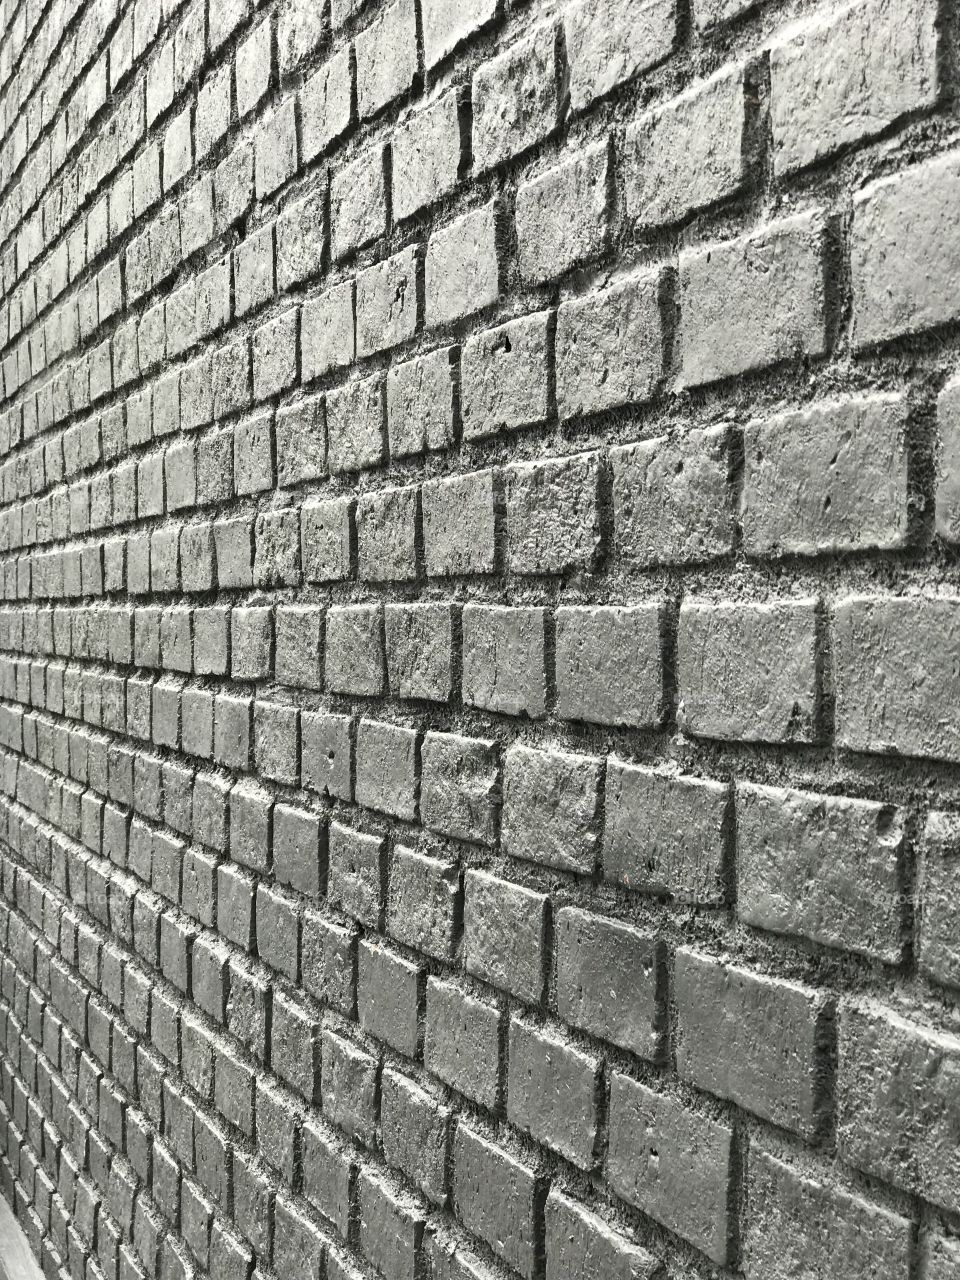 Wall brick